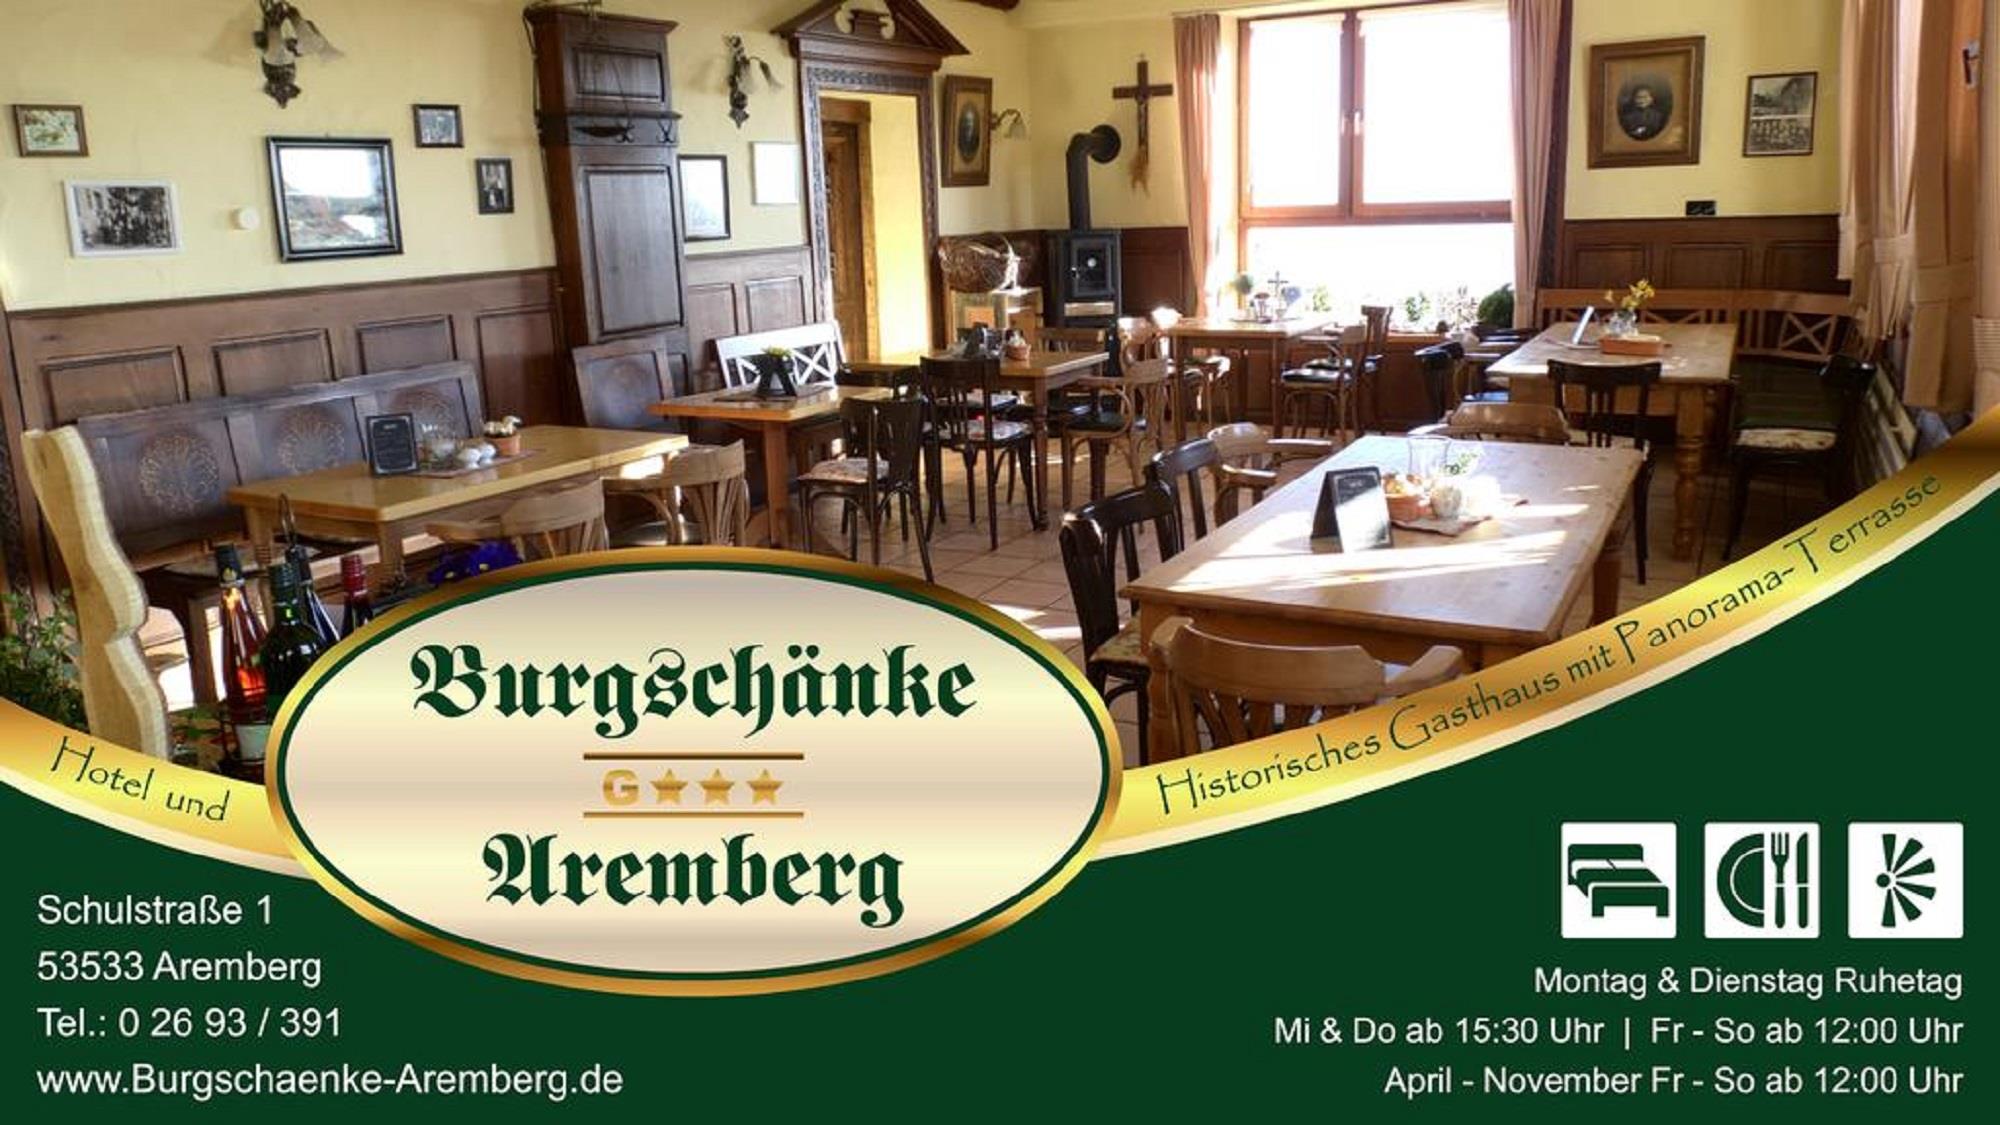 Wilkommen in der  Burgschänke Aremberg, @ Burgschänke Aremberg